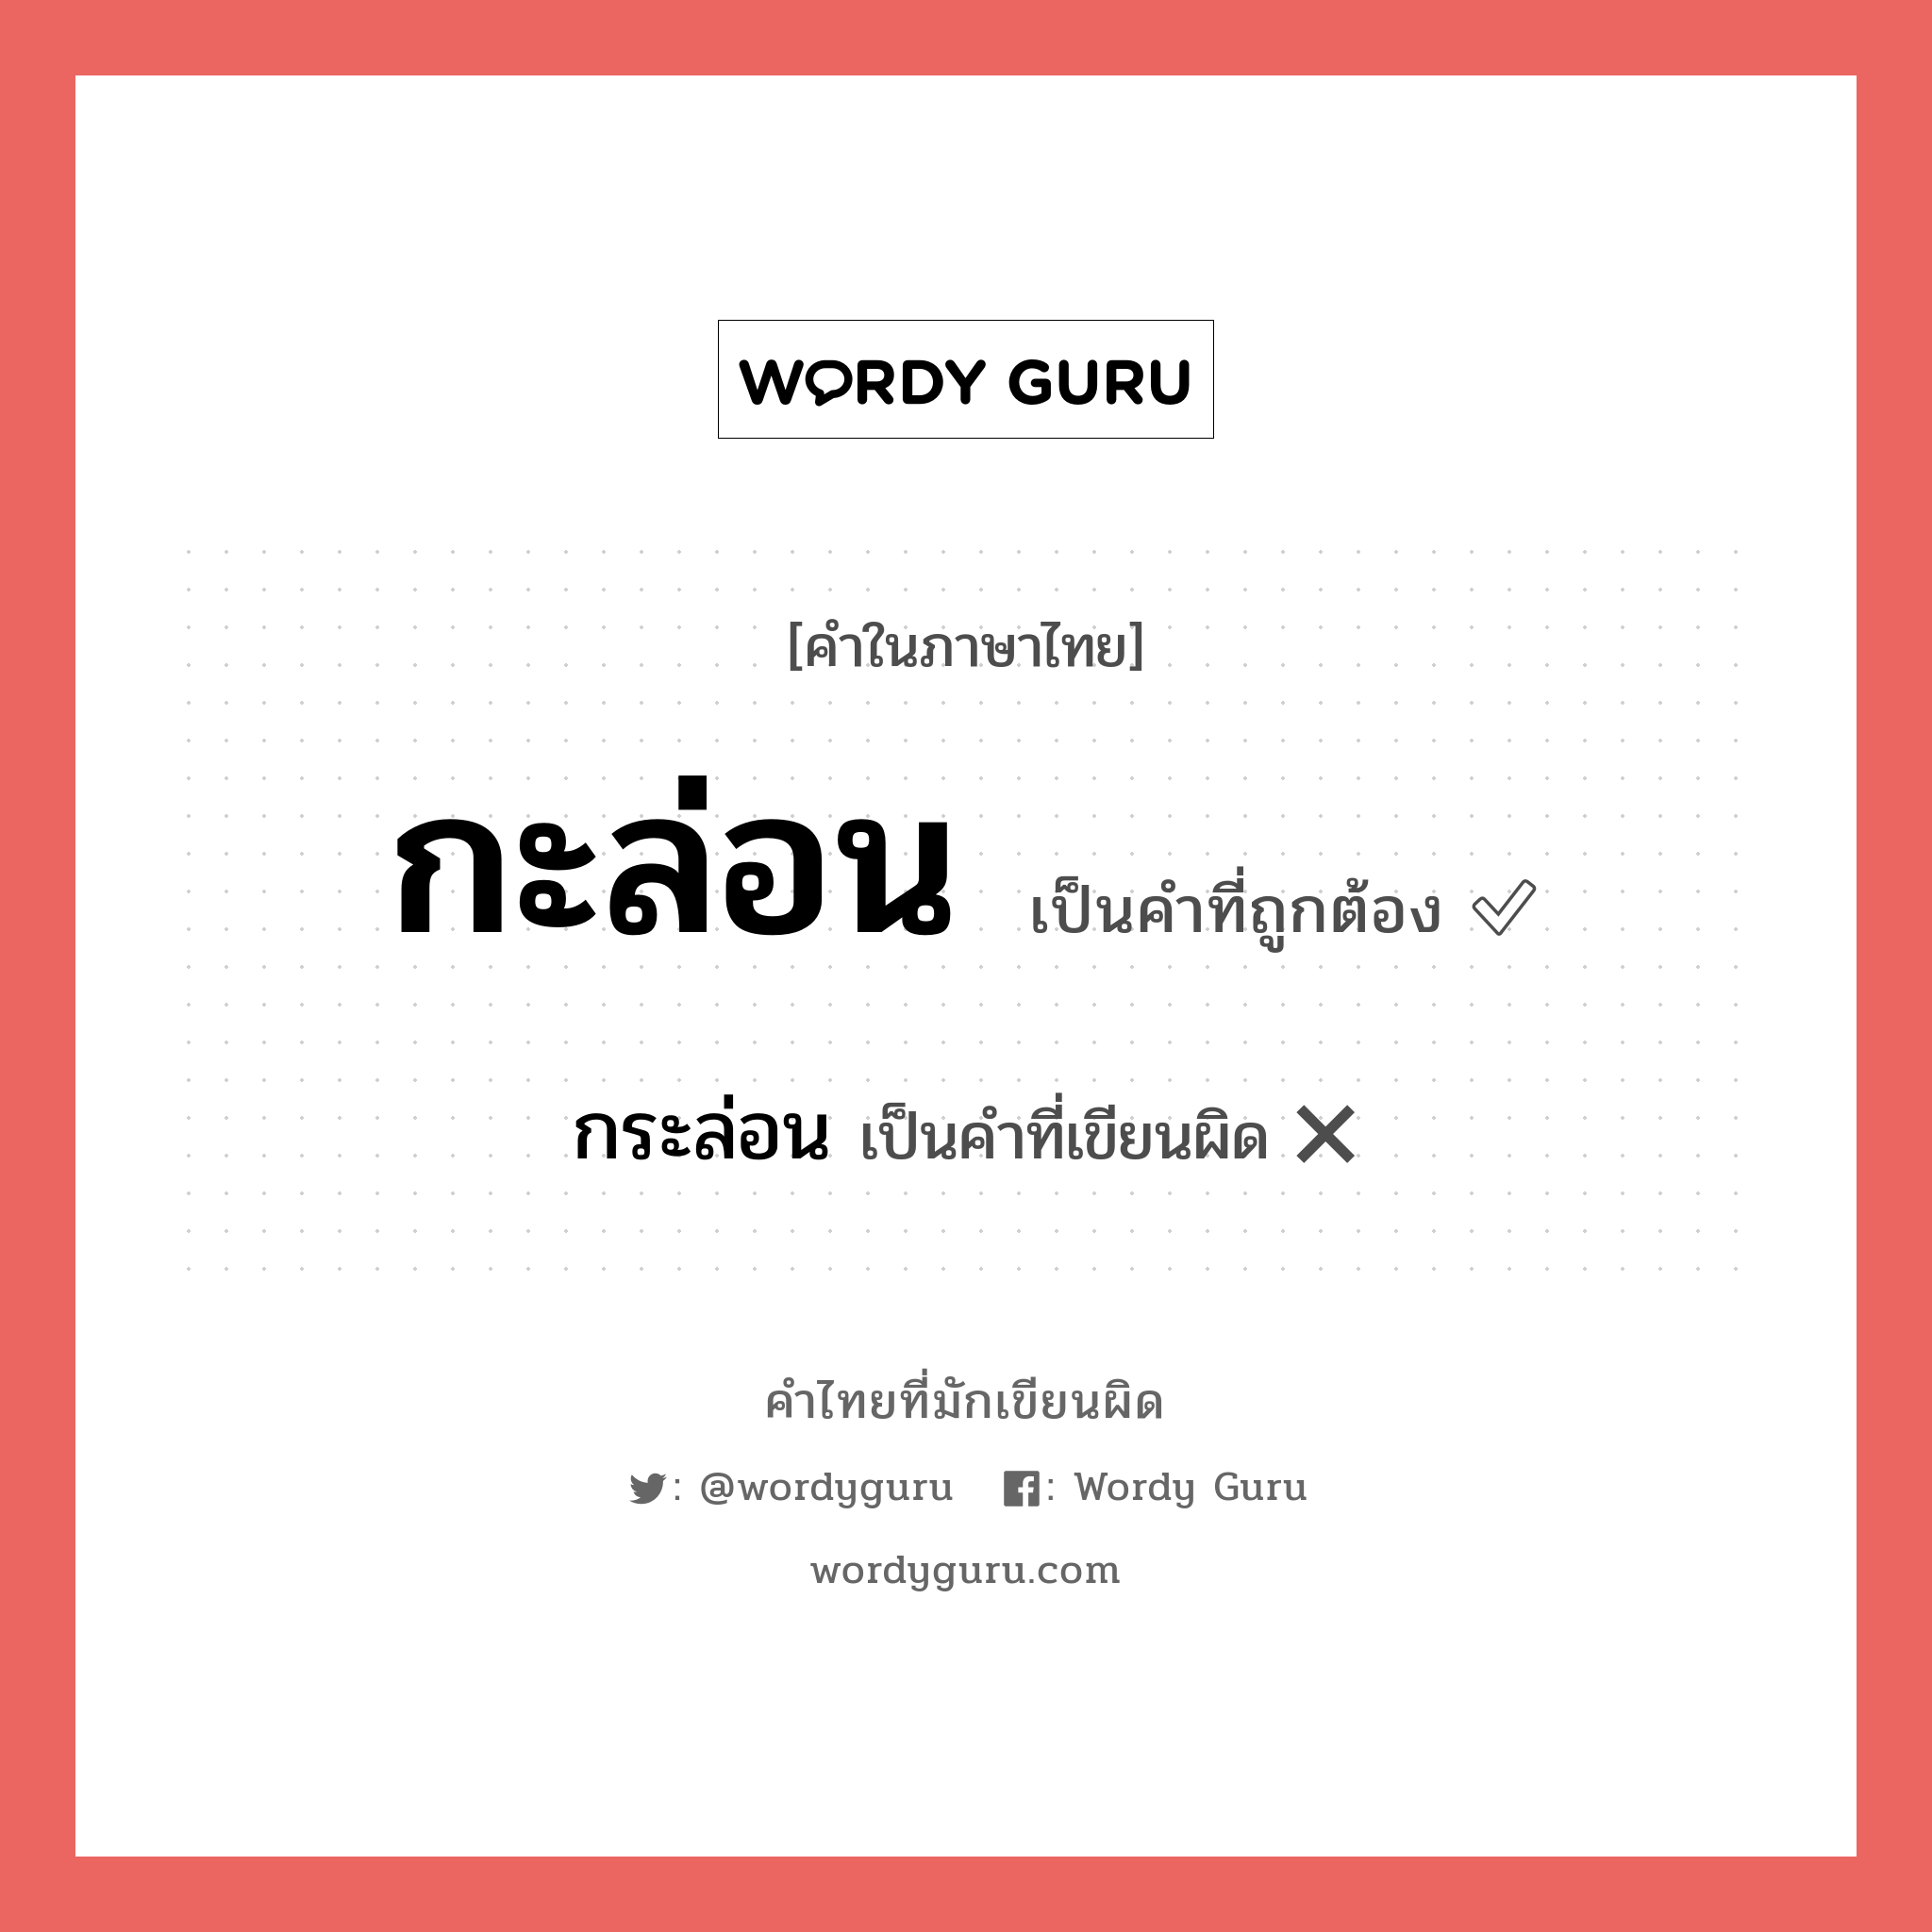 กะล่อน หรือ กระล่อน เขียนยังไง? คำไหนเขียนถูก?, คำในภาษาไทยที่มักเขียนผิด กะล่อน คำที่ผิด ❌ กระล่อน